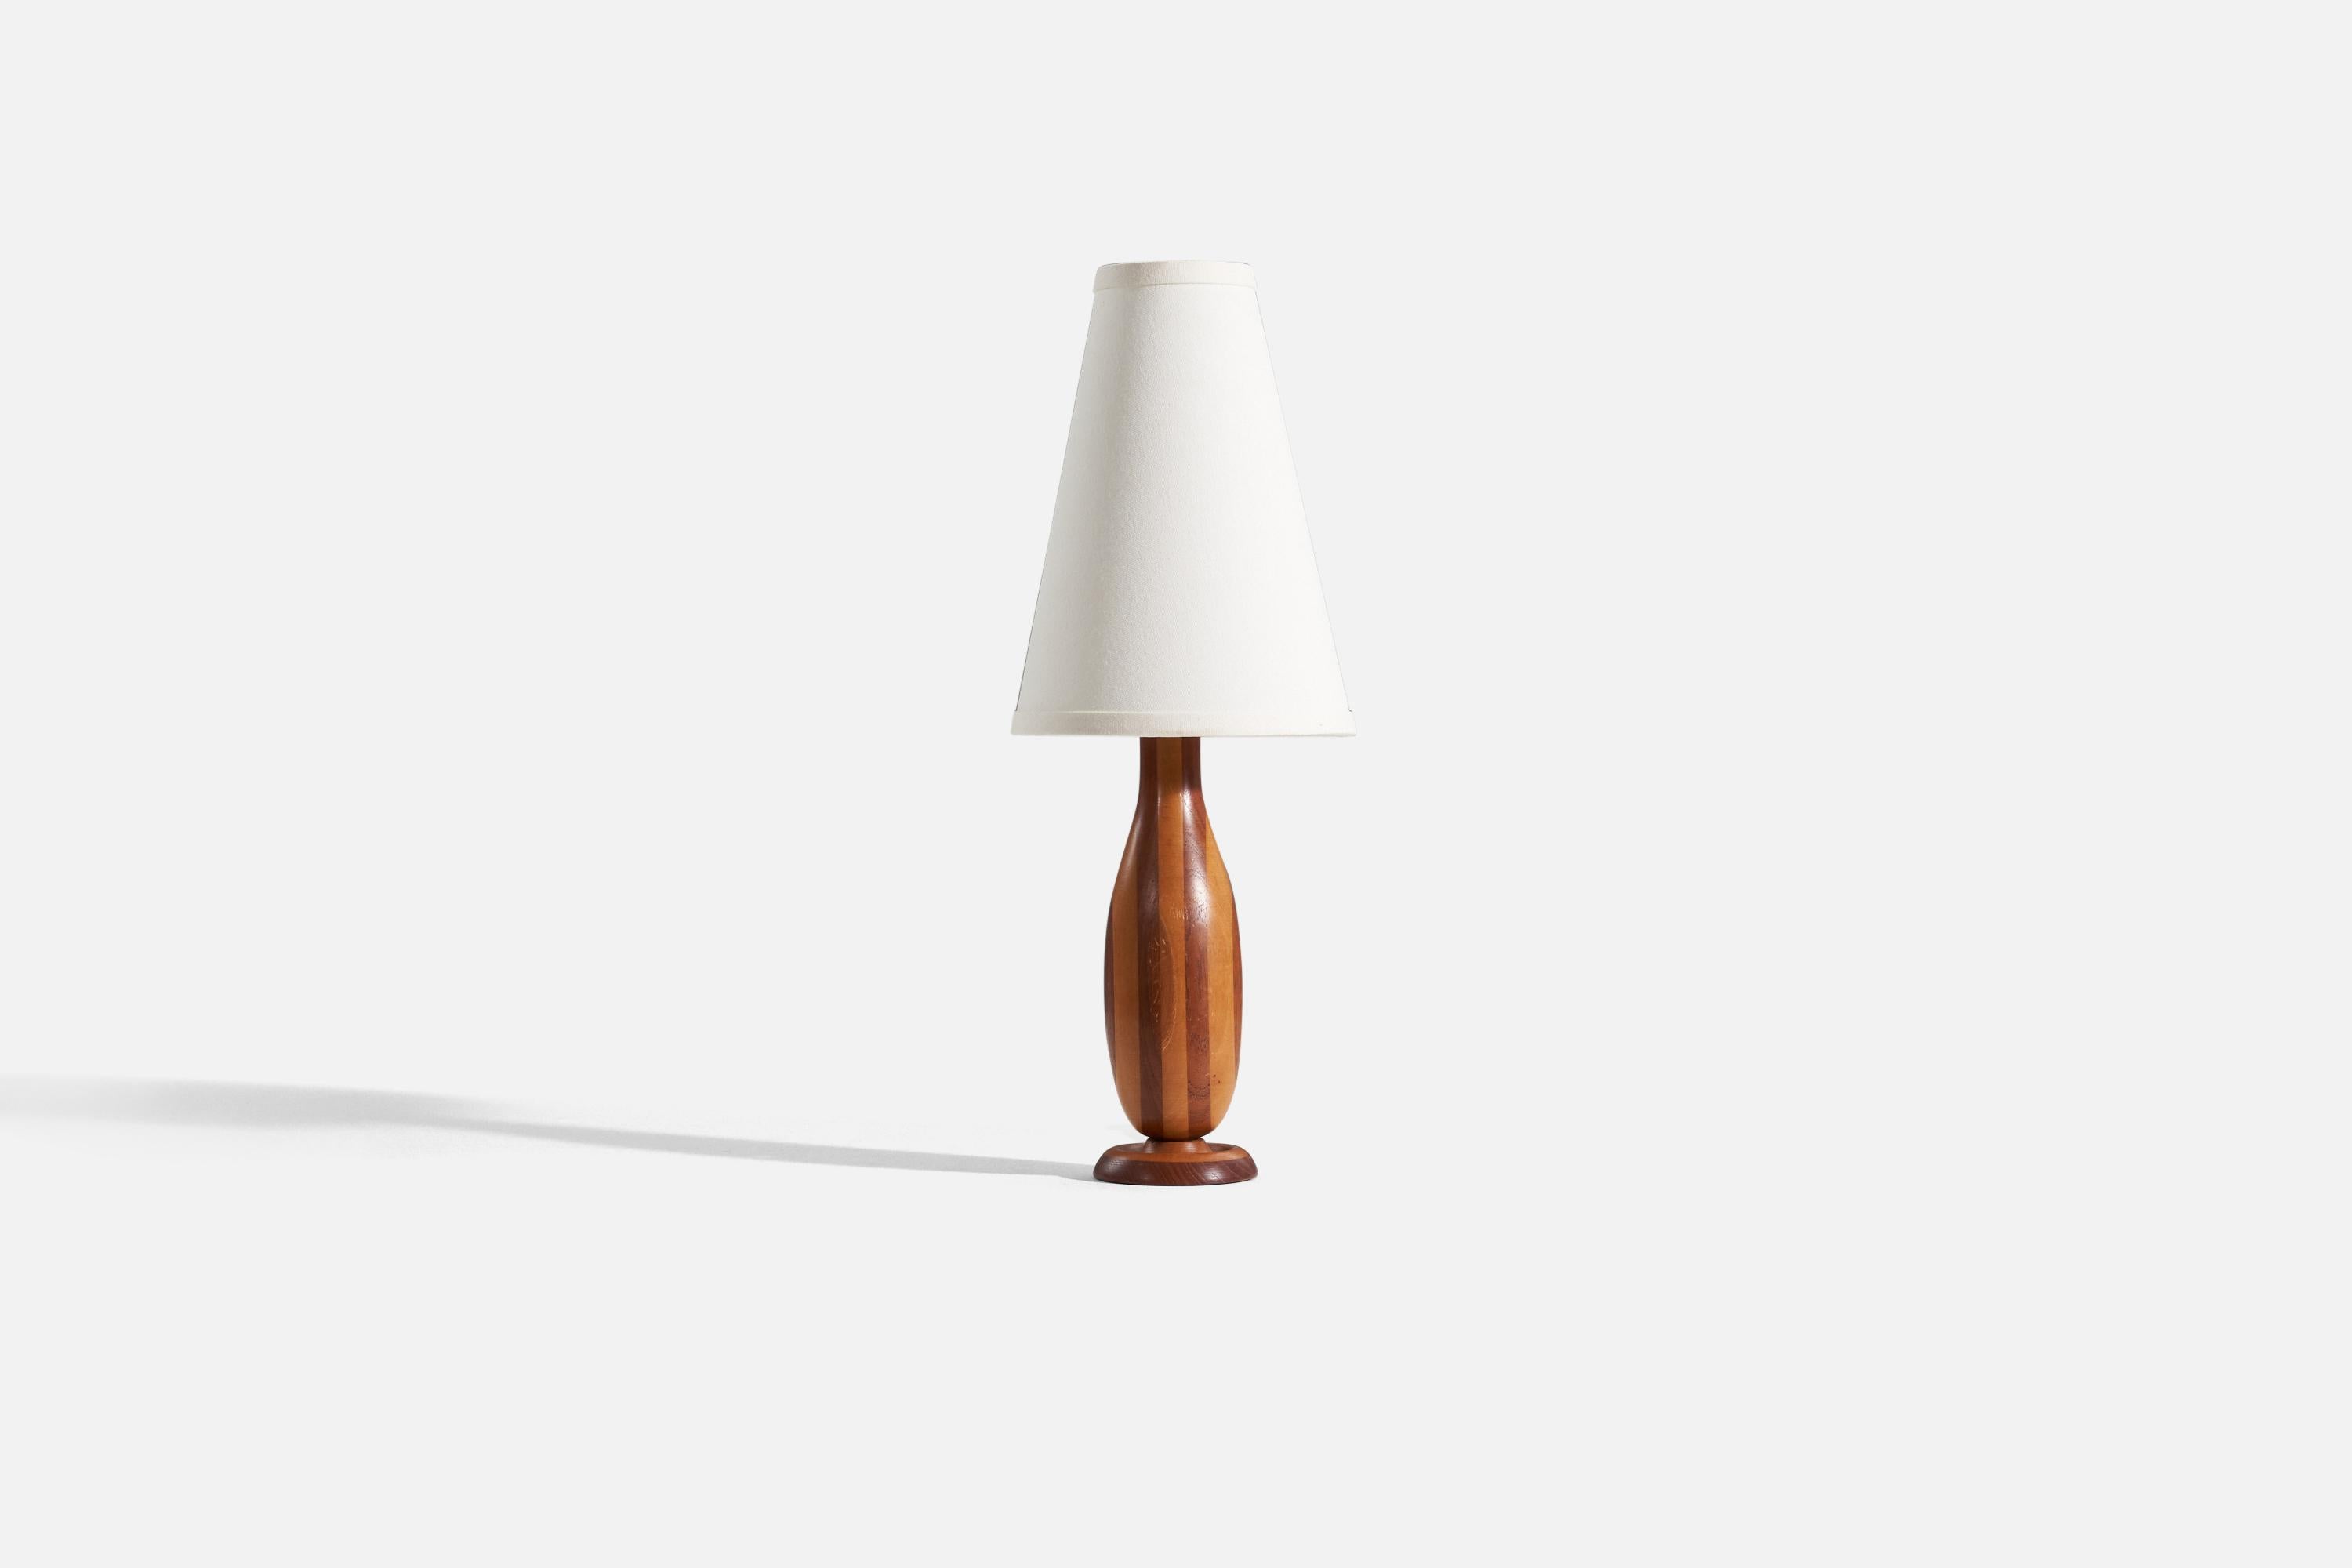 Une lampe de table en bois, conçue et produite par un designer suédois, Suède, années 1960.

Vendu sans abat-jour. 
Dimensions de la lampe (pouces) : 13.5 x 3,5 x 3,5 (H x L x P).
Dimensions ombre (pouces) : 3.25 x 7,25 x 10 (T x B x